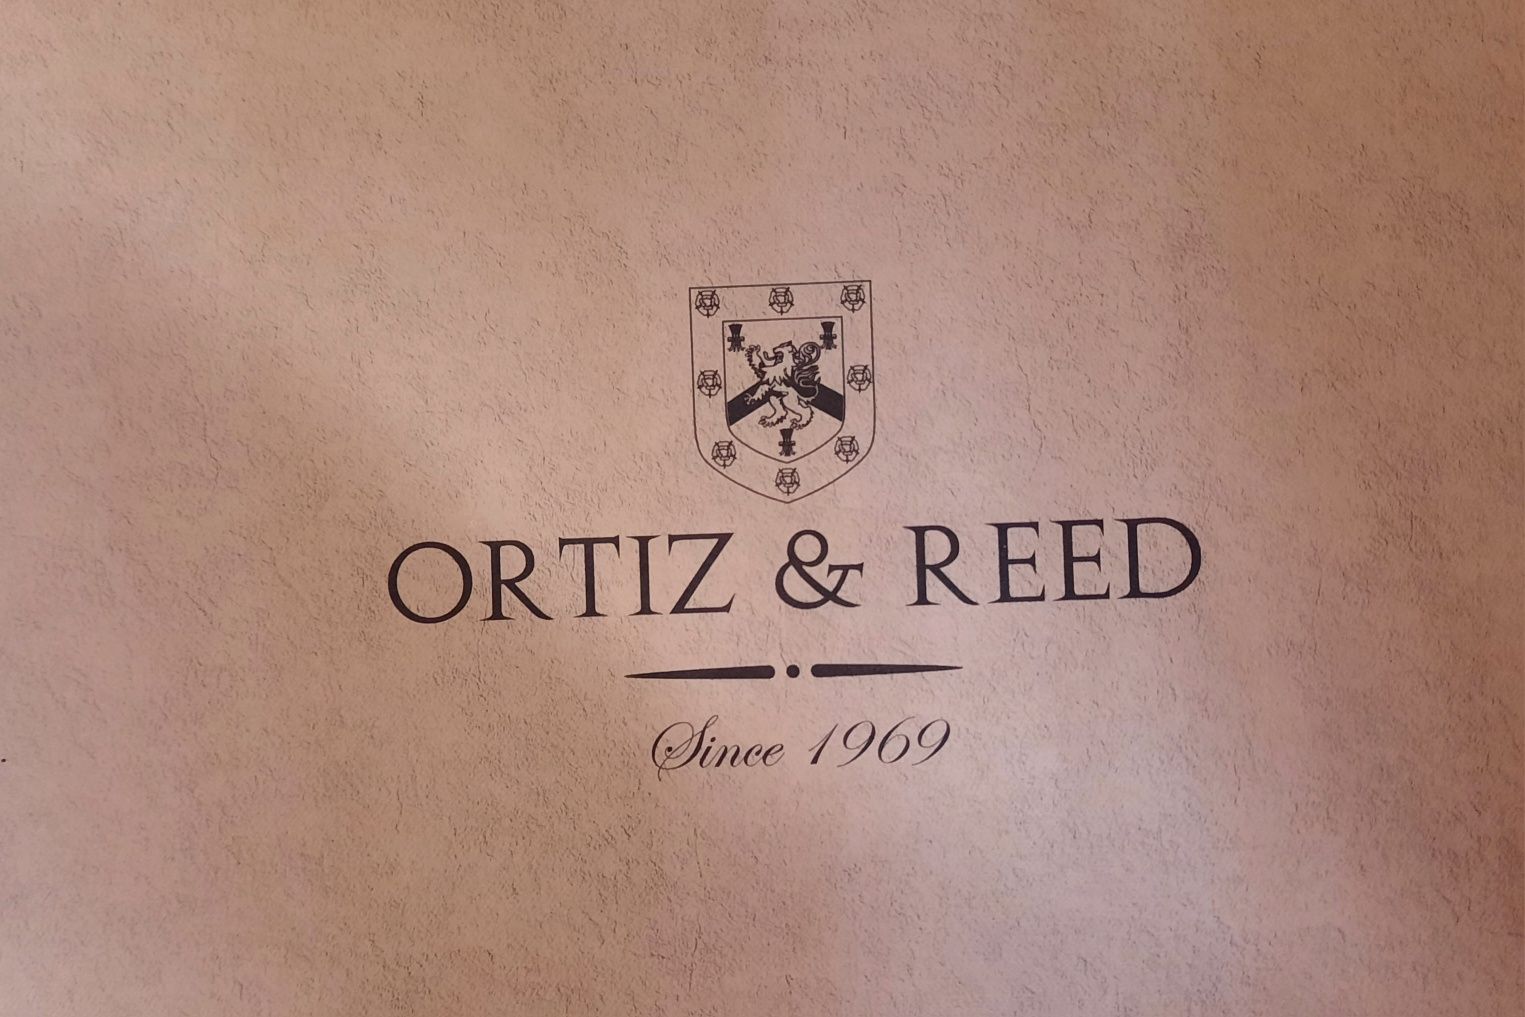 Дамски кецове Ortiz & Reed, 41 номер, естествена кожа